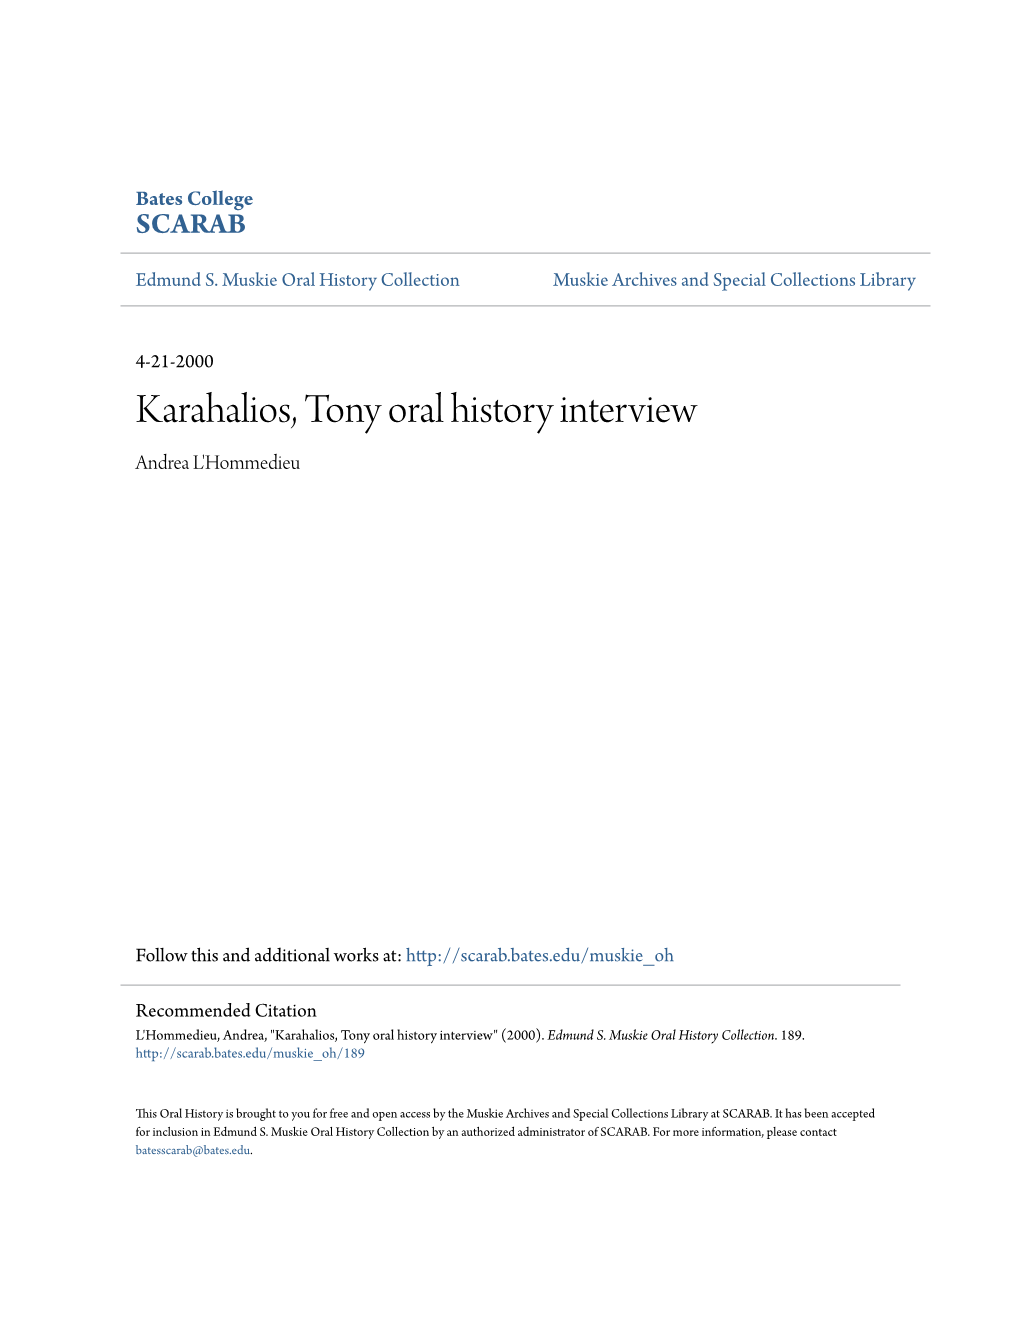 Karahalios, Tony Oral History Interview Andrea L'hommedieu